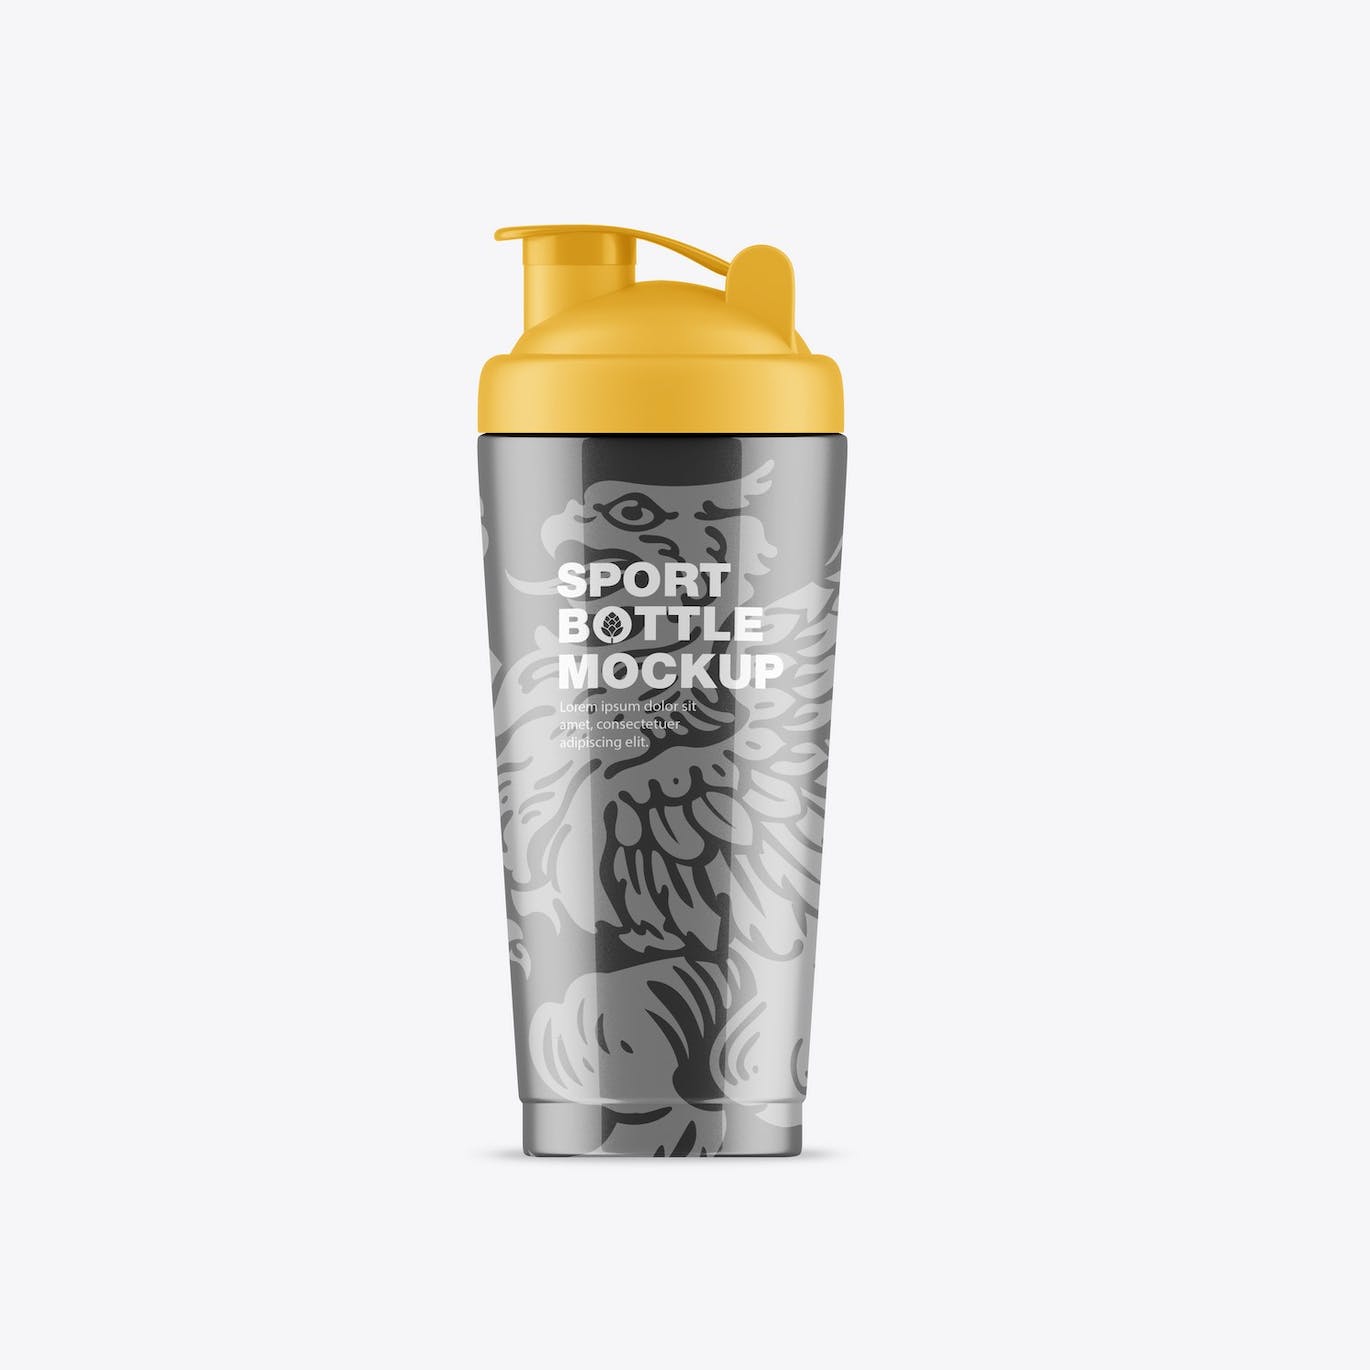 健身房运动水瓶包装设计样机 Gym Bottle Mockup 样机素材 第4张